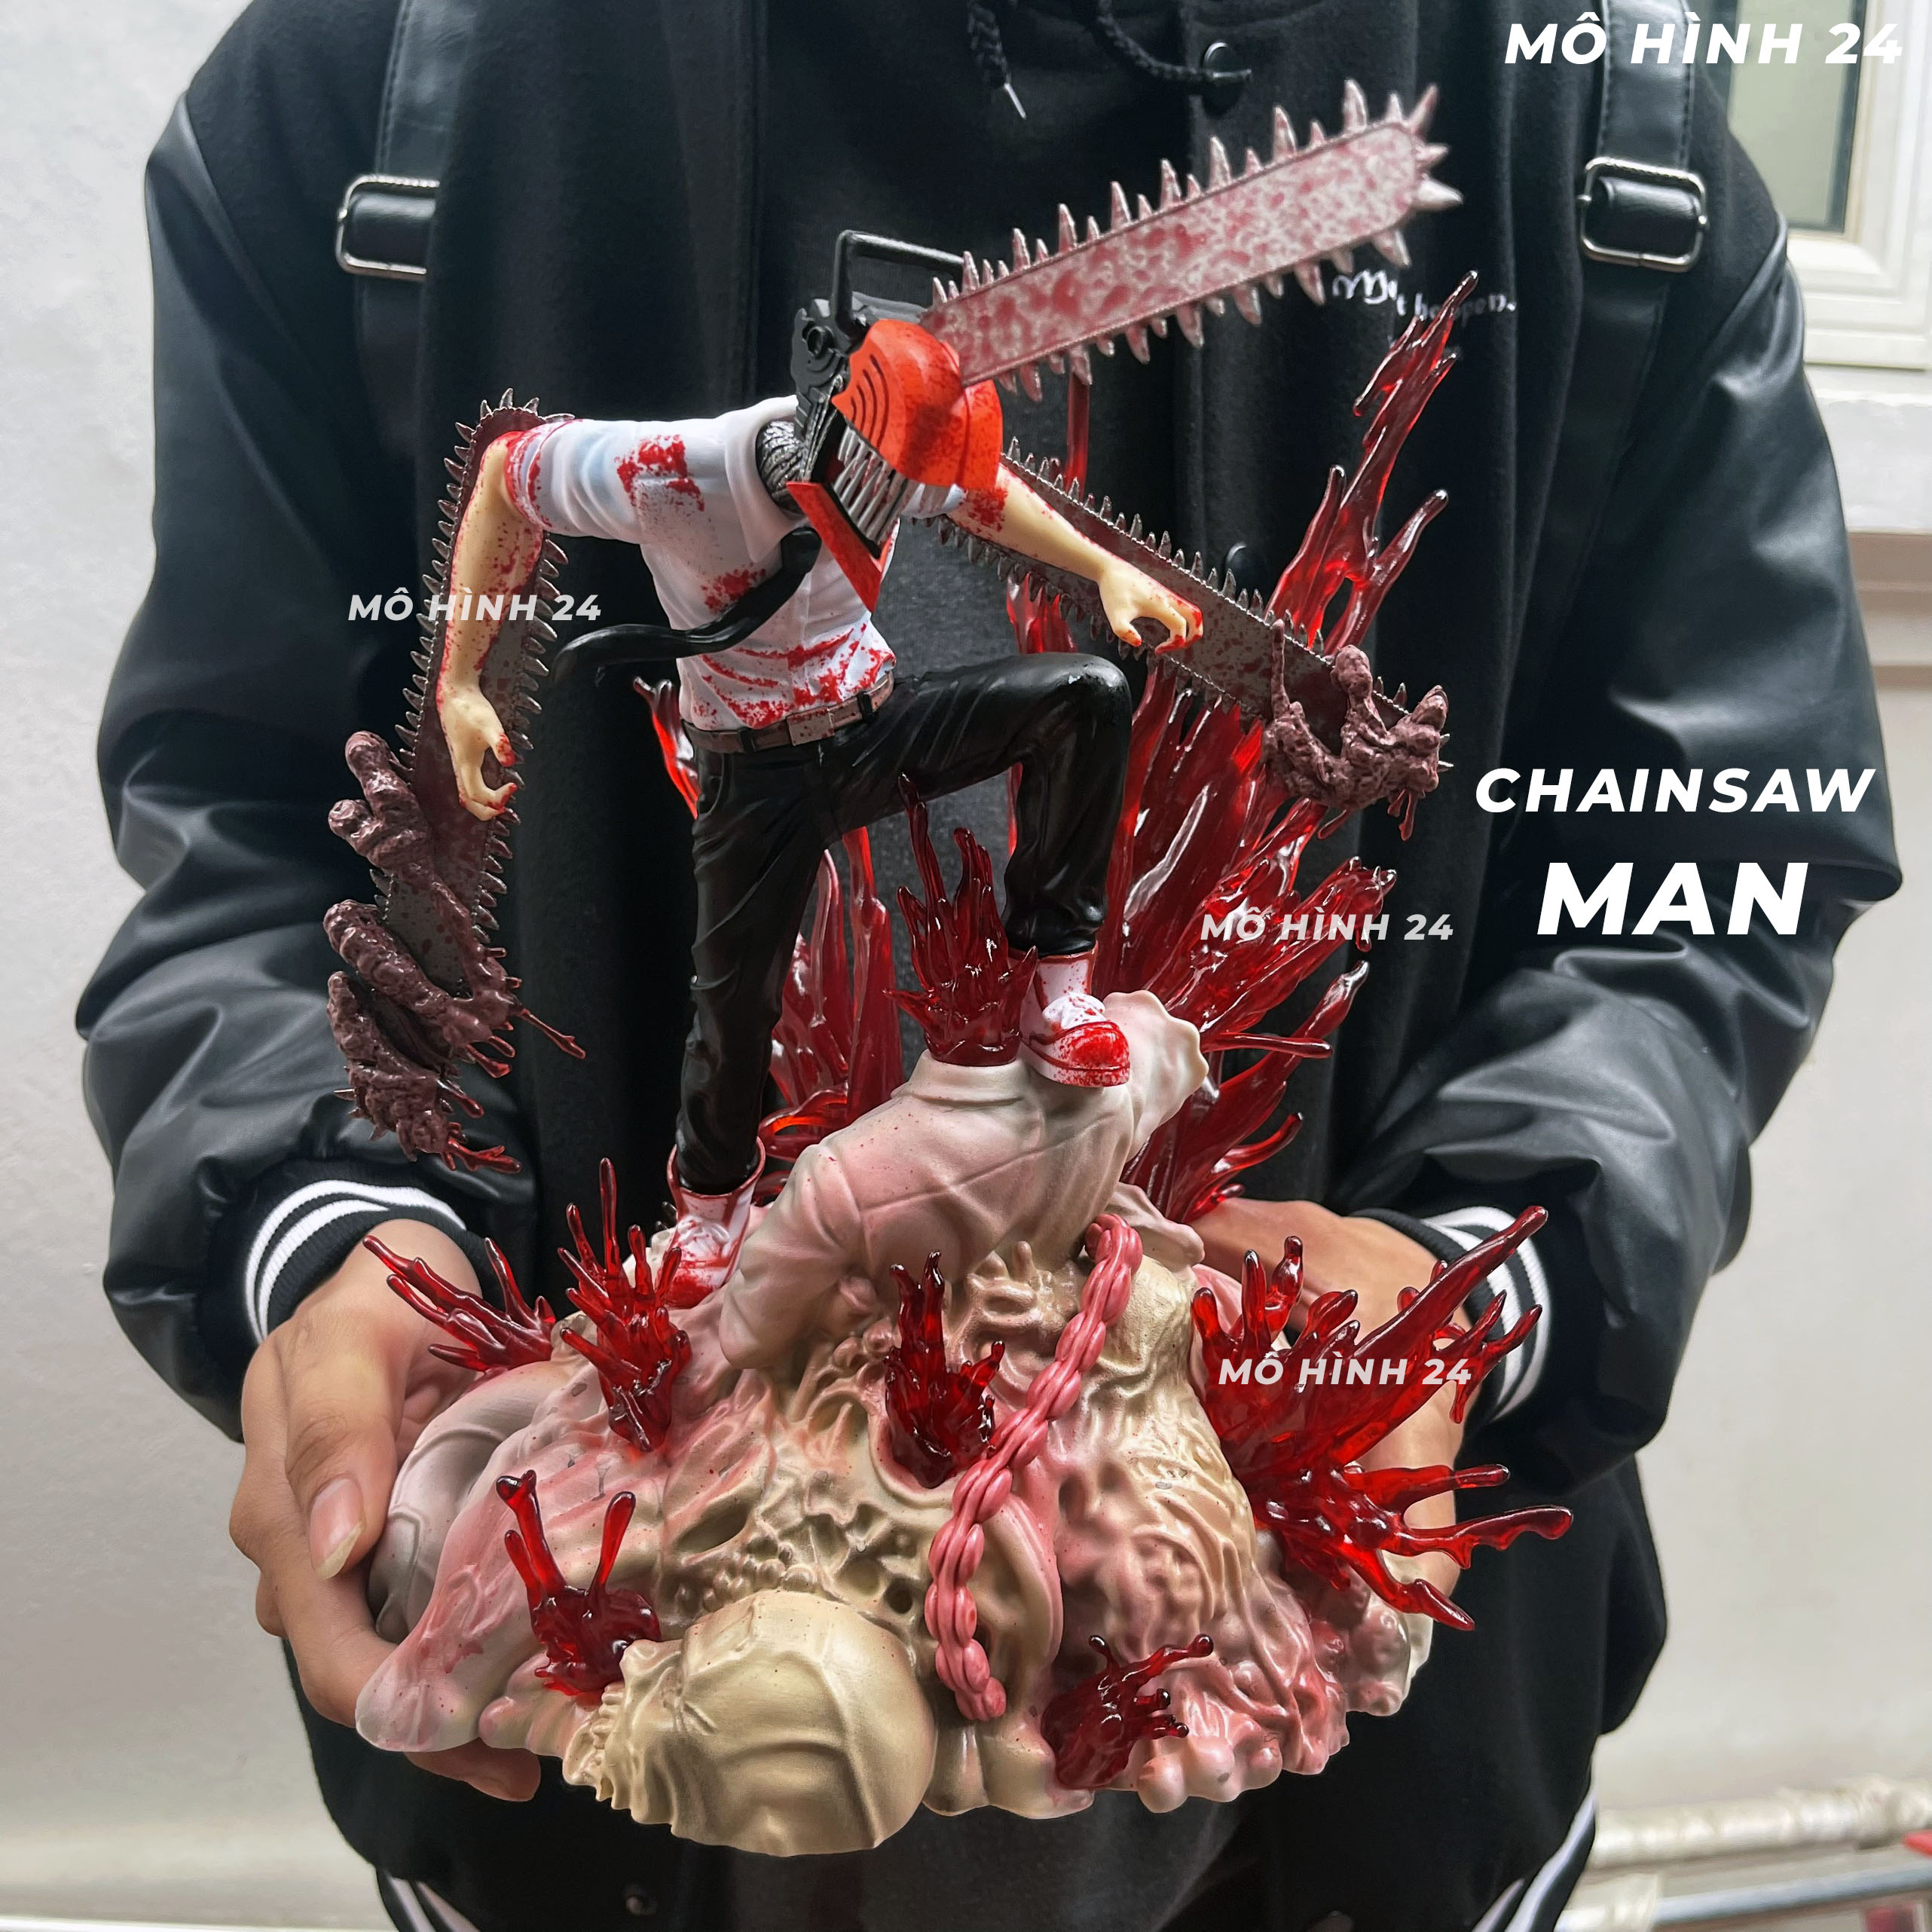 Bạn muốn sở hữu một tượng mô hình Chainsaw Man chibi độc đáo và đẹp mắt? Hãy xem ảnh và khám phá những mẫu tượng mô hình này. Chắc chắn rằng bạn sẽ rất thích!